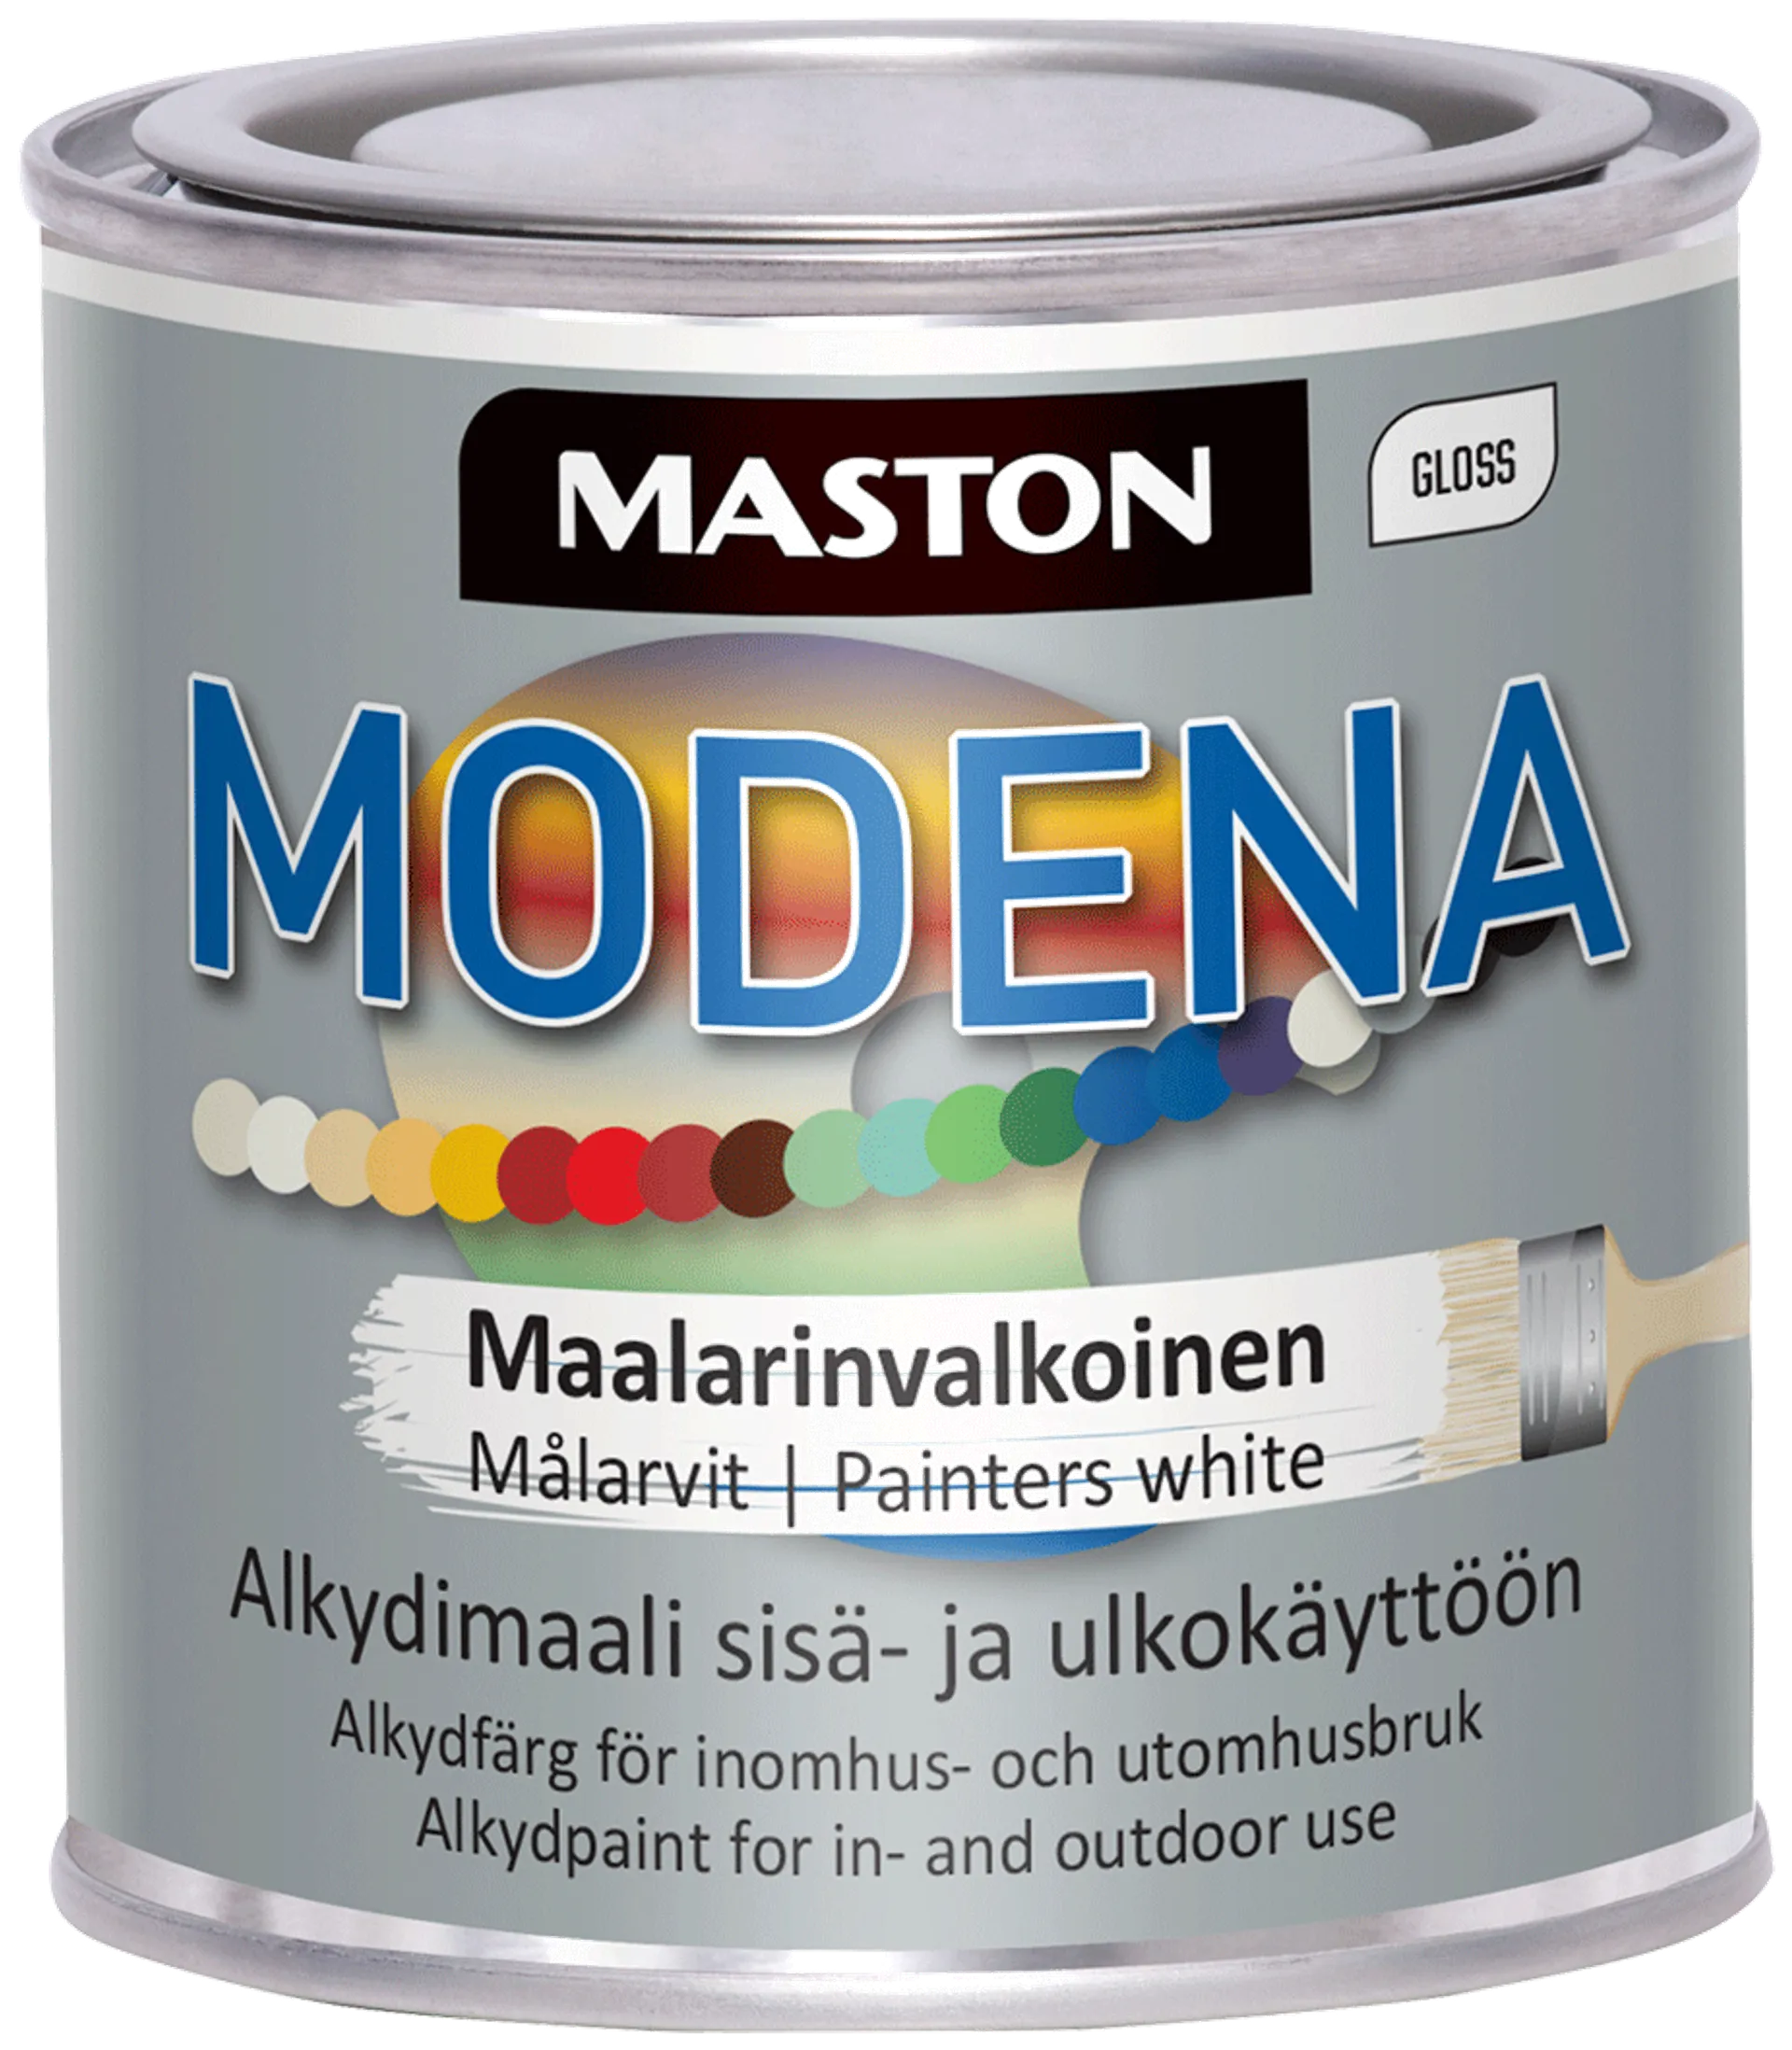 Maston Modena maali 250 ml maalarinvalkoinen - 1